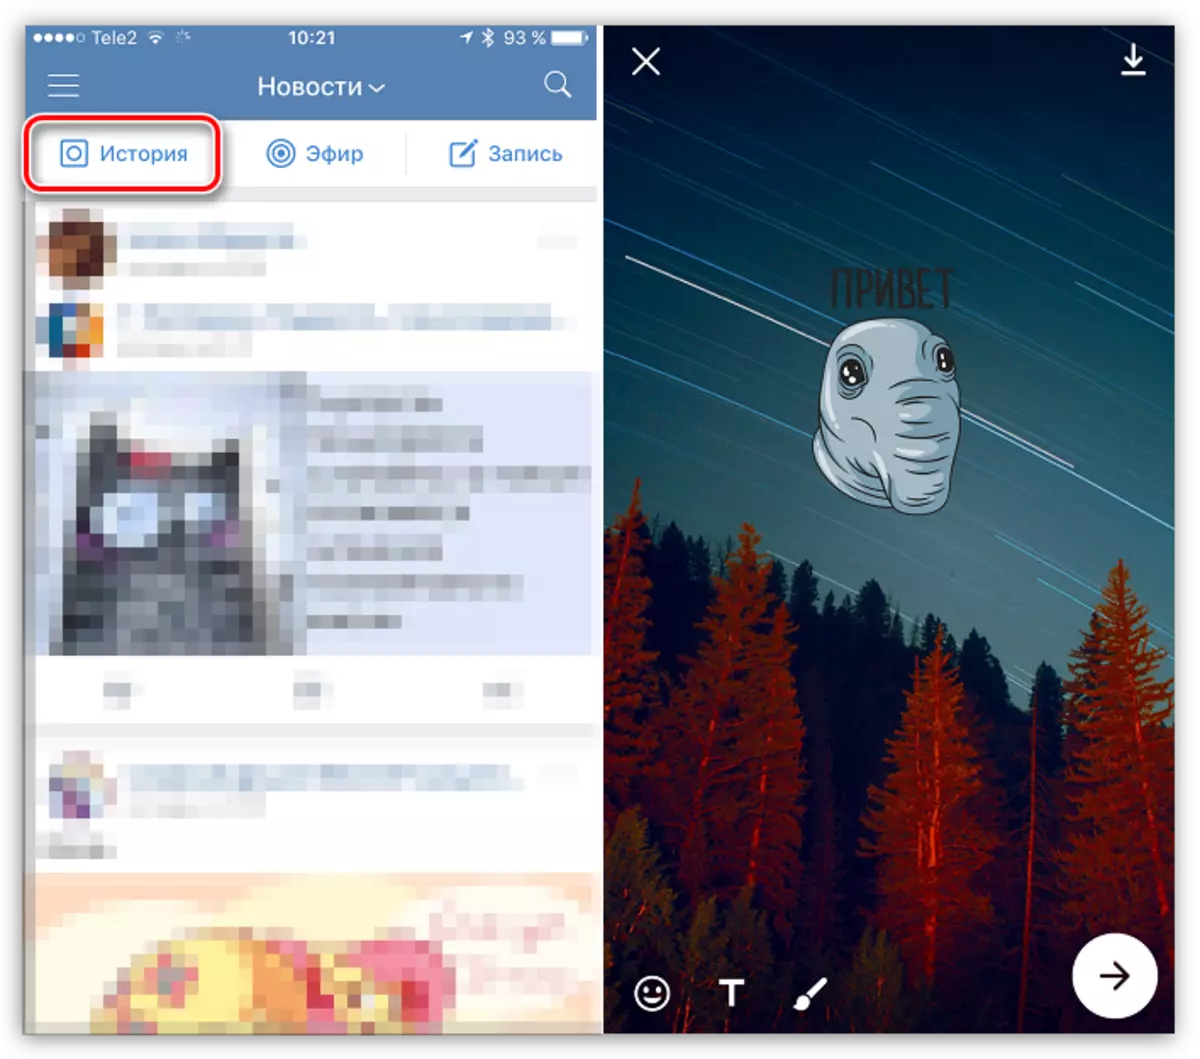 داستان ها در Vkontakte برای iOS